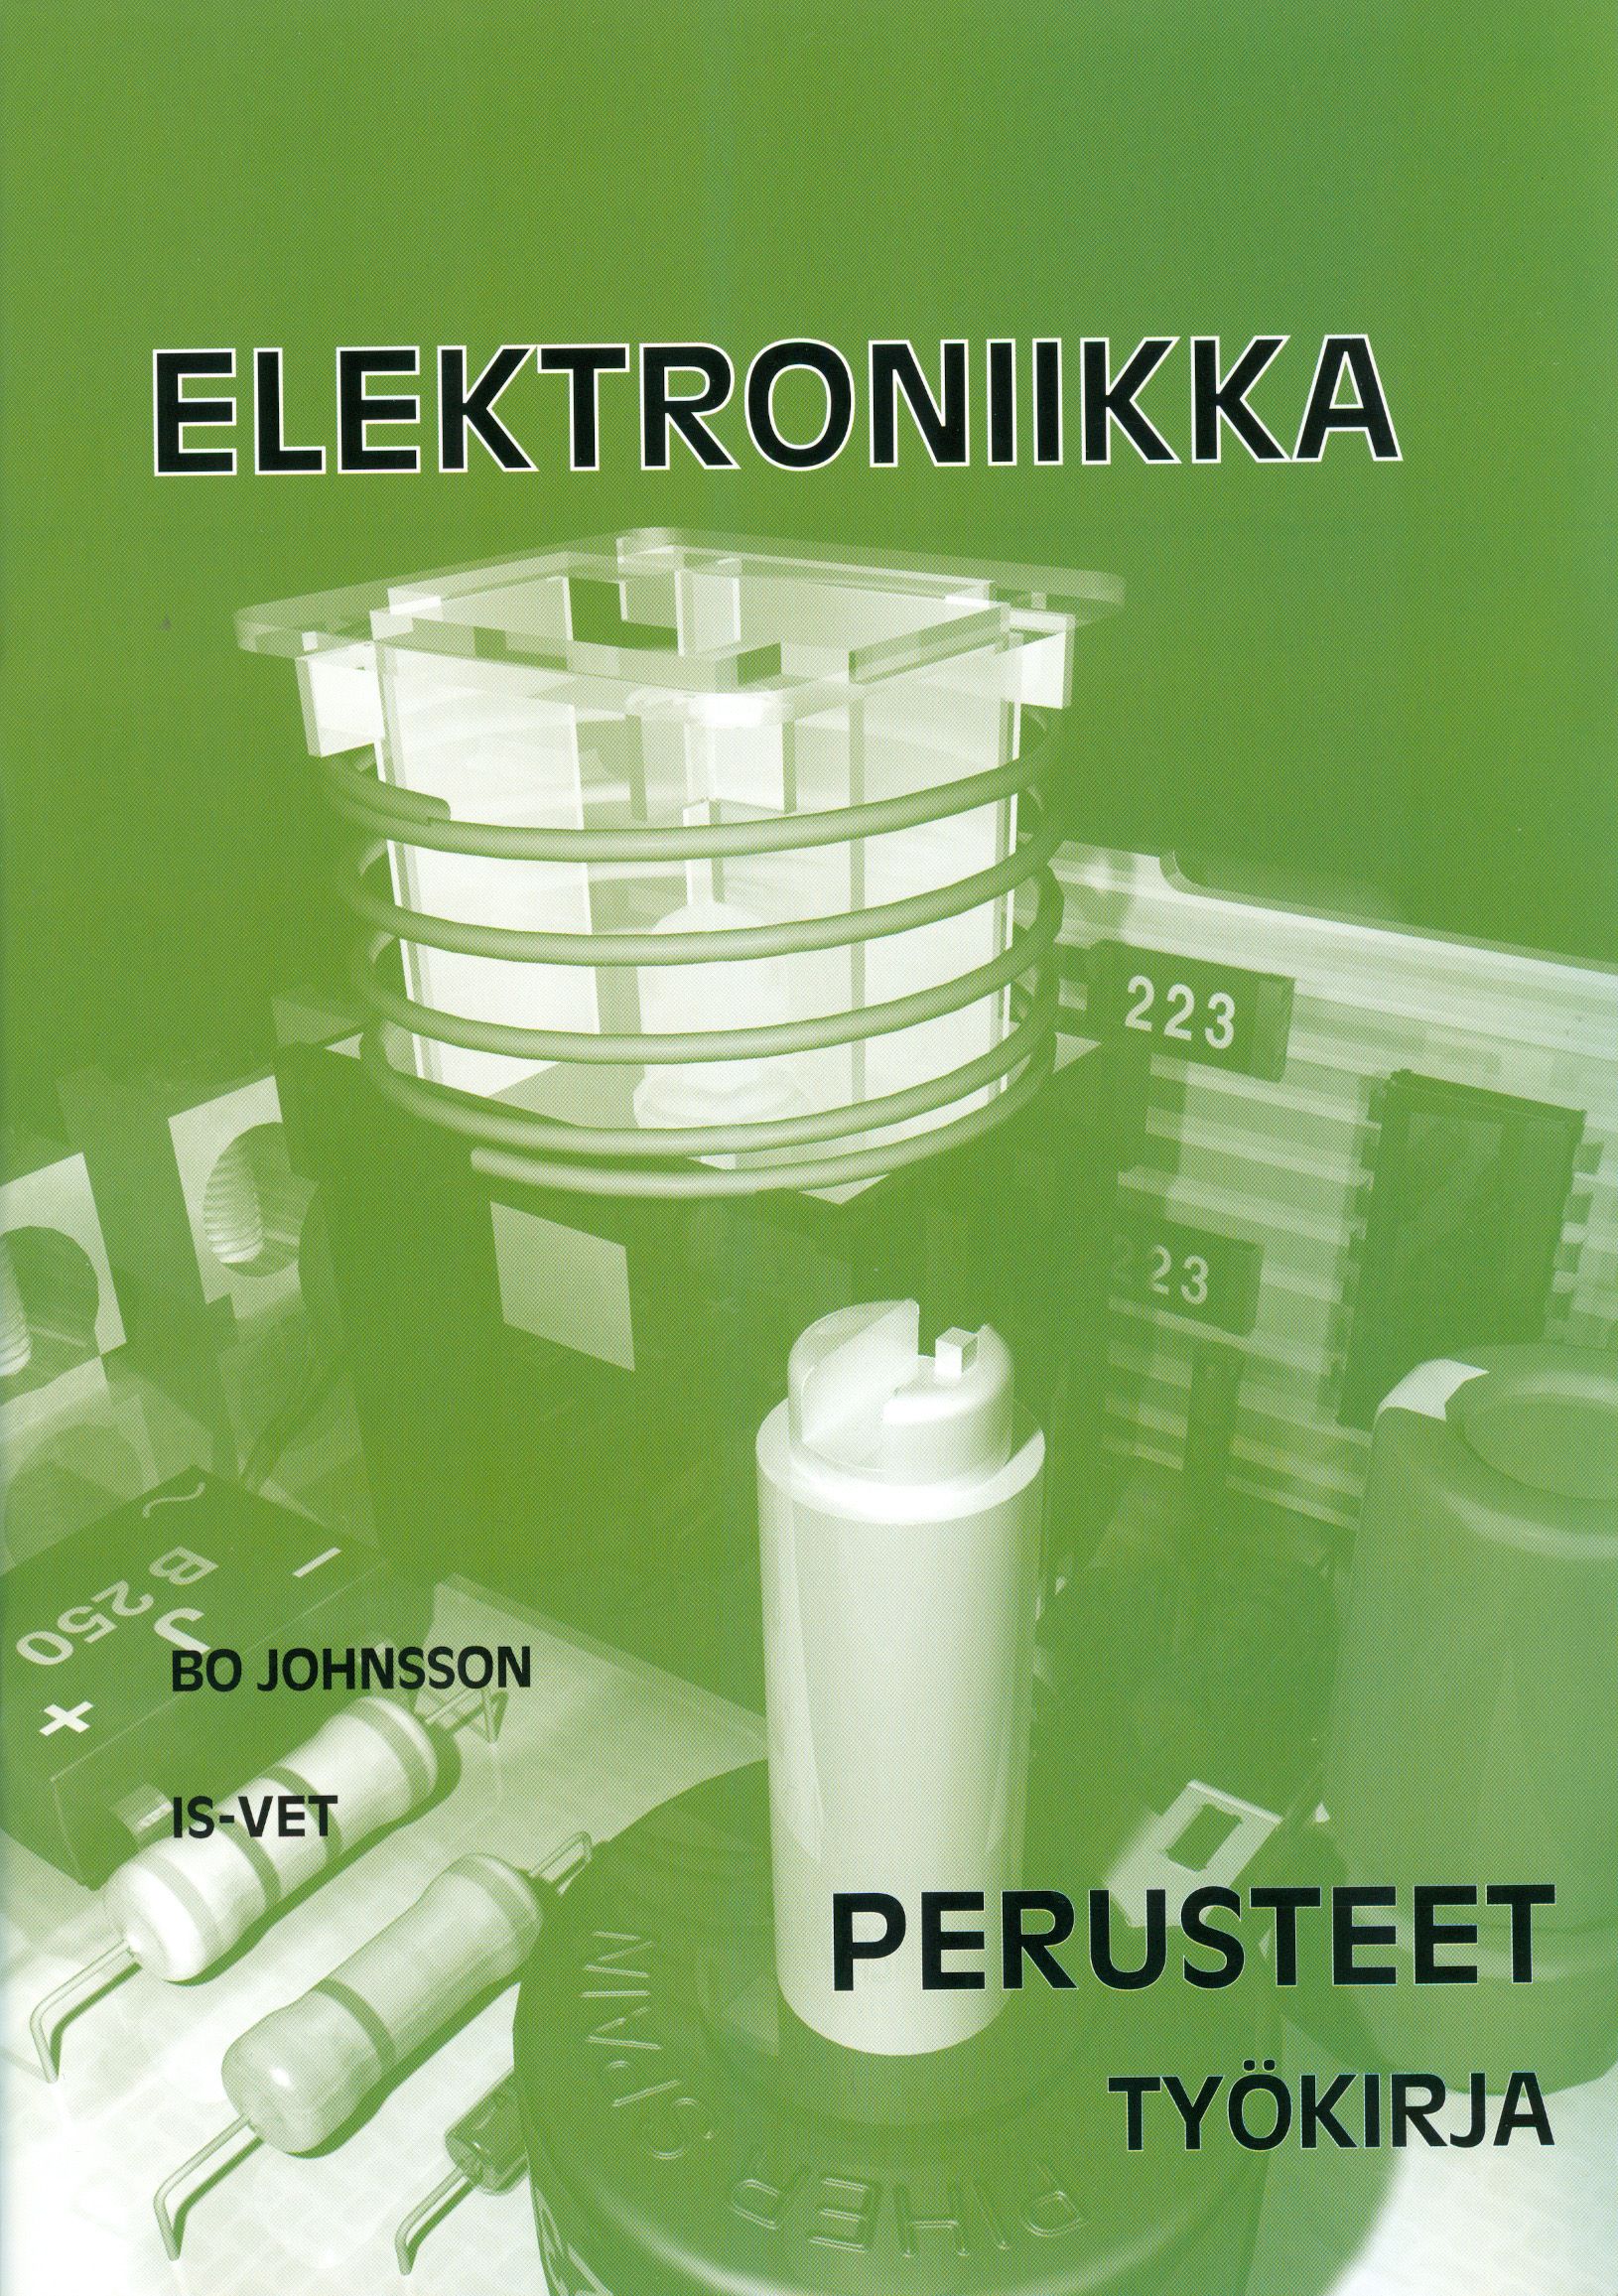 Bo Johnsson : Elektroniikka